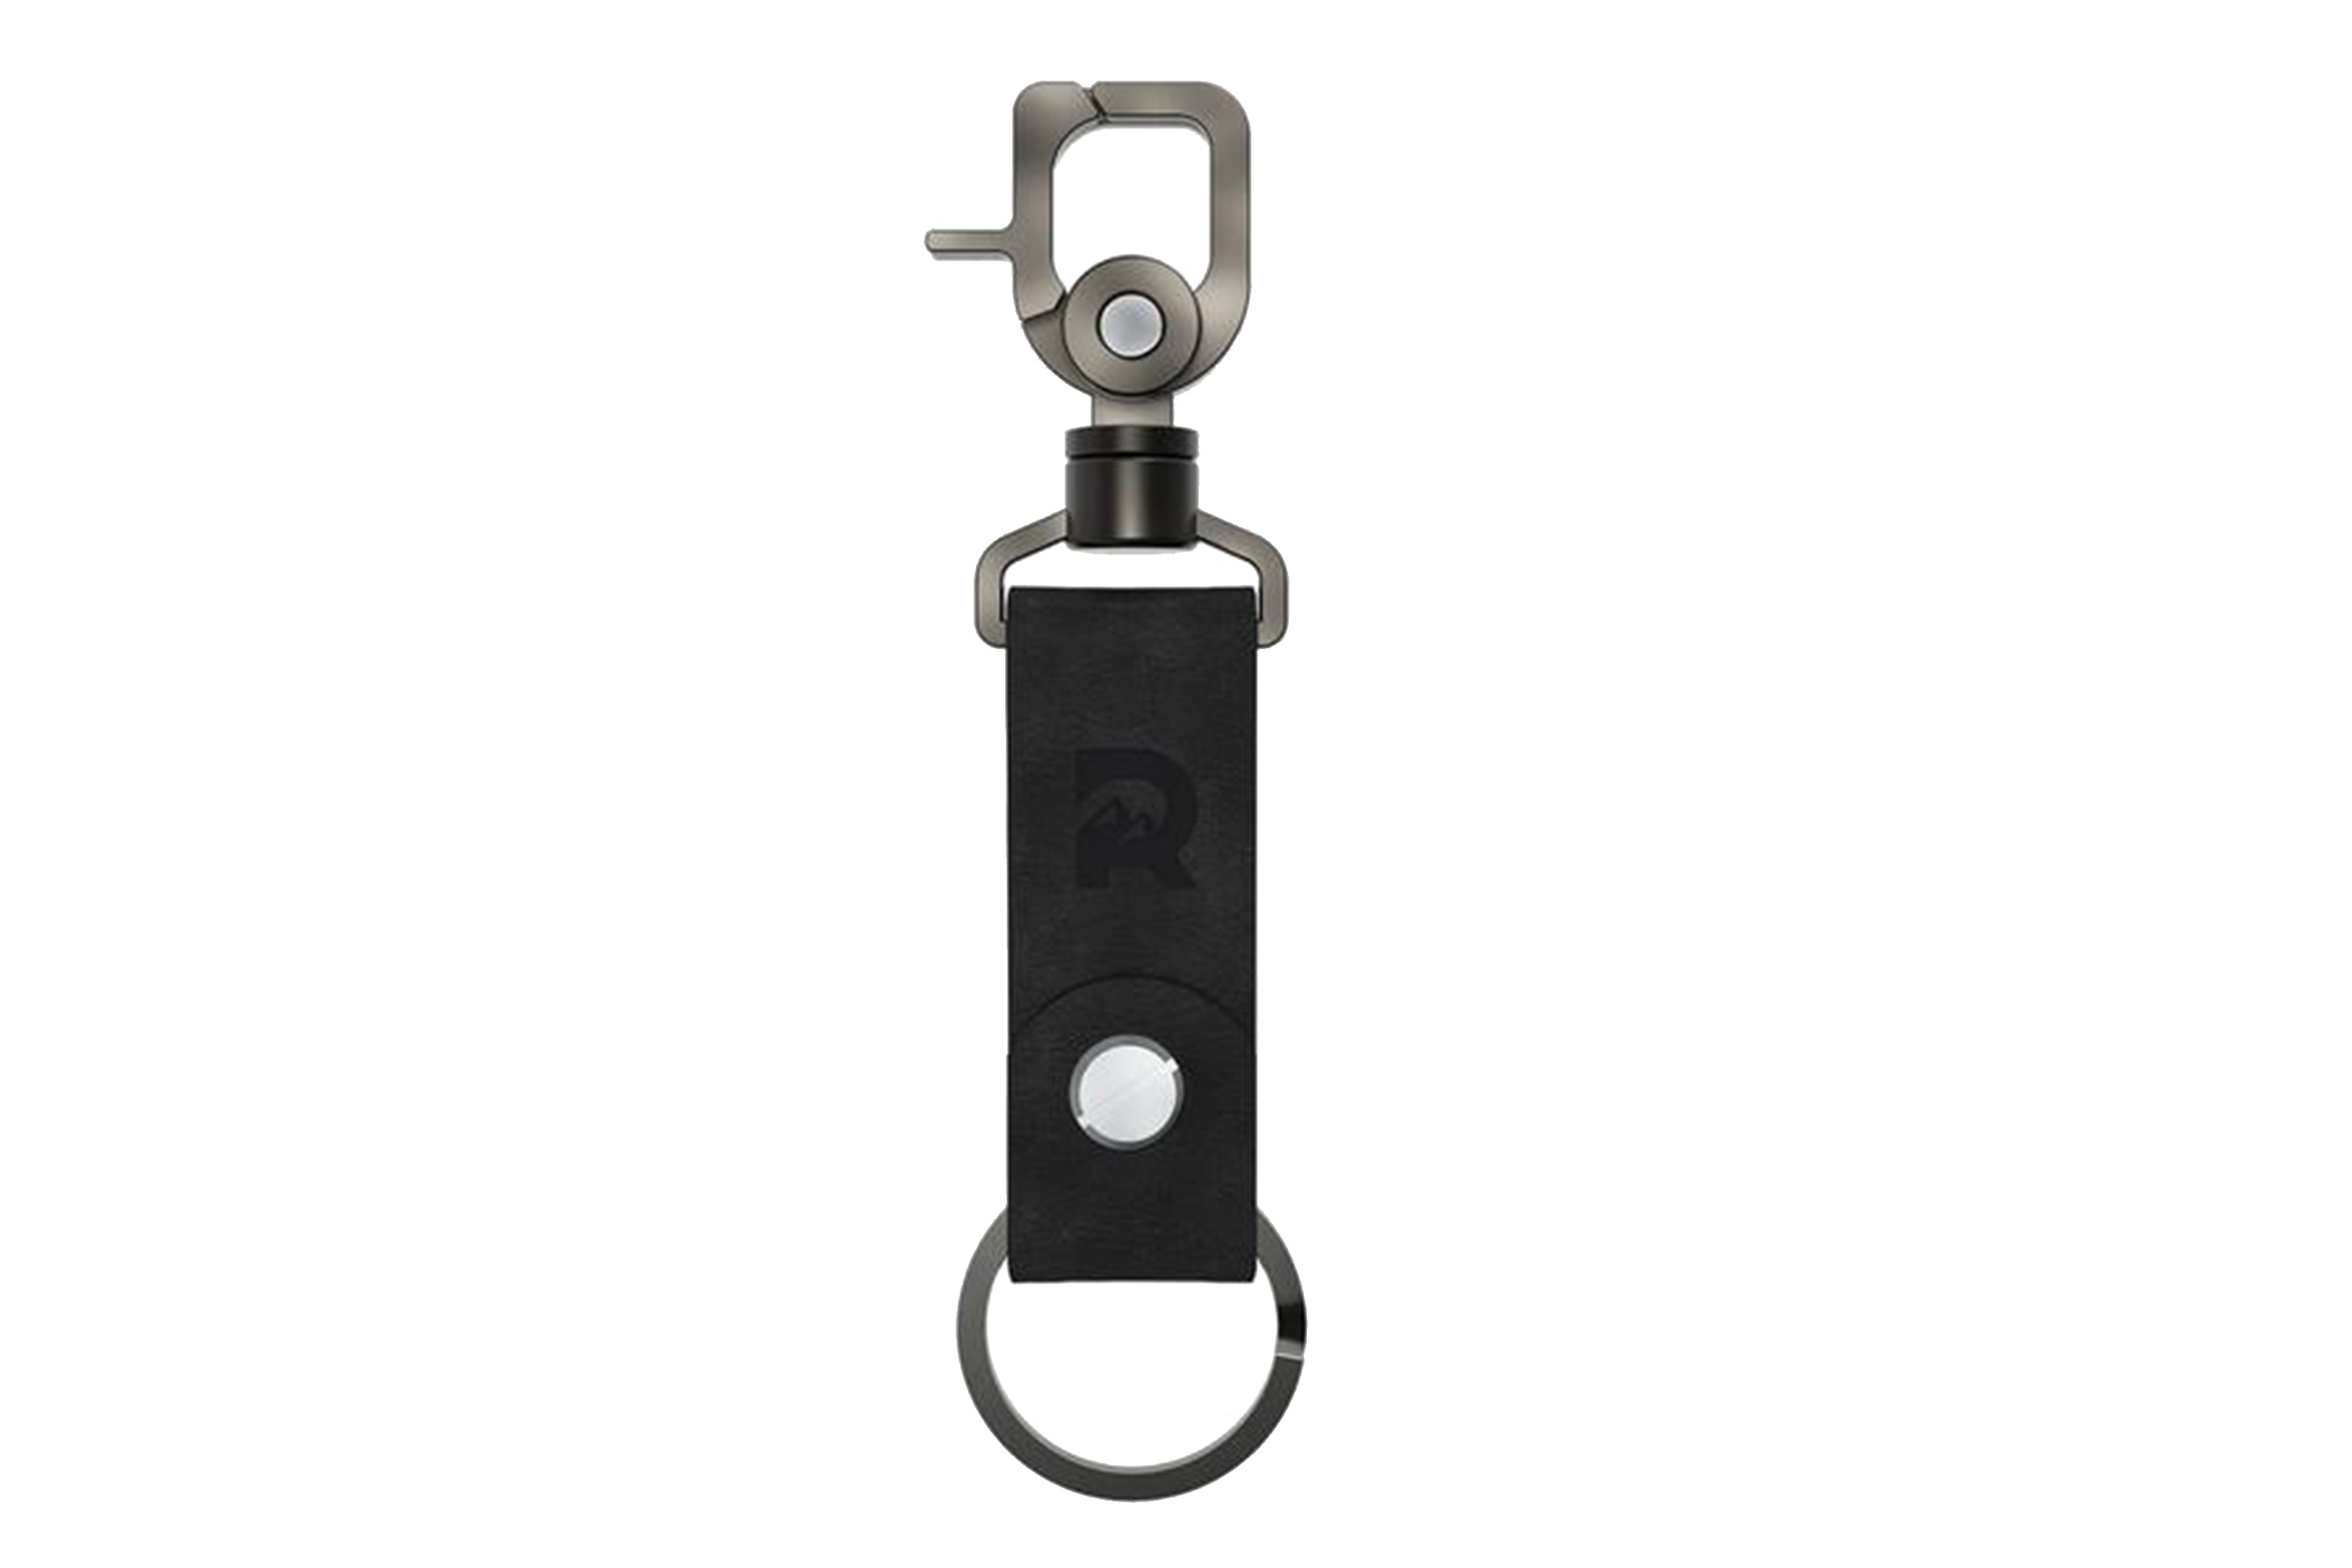 Leather Keychain | Products | the RIDGE カードも収納できる